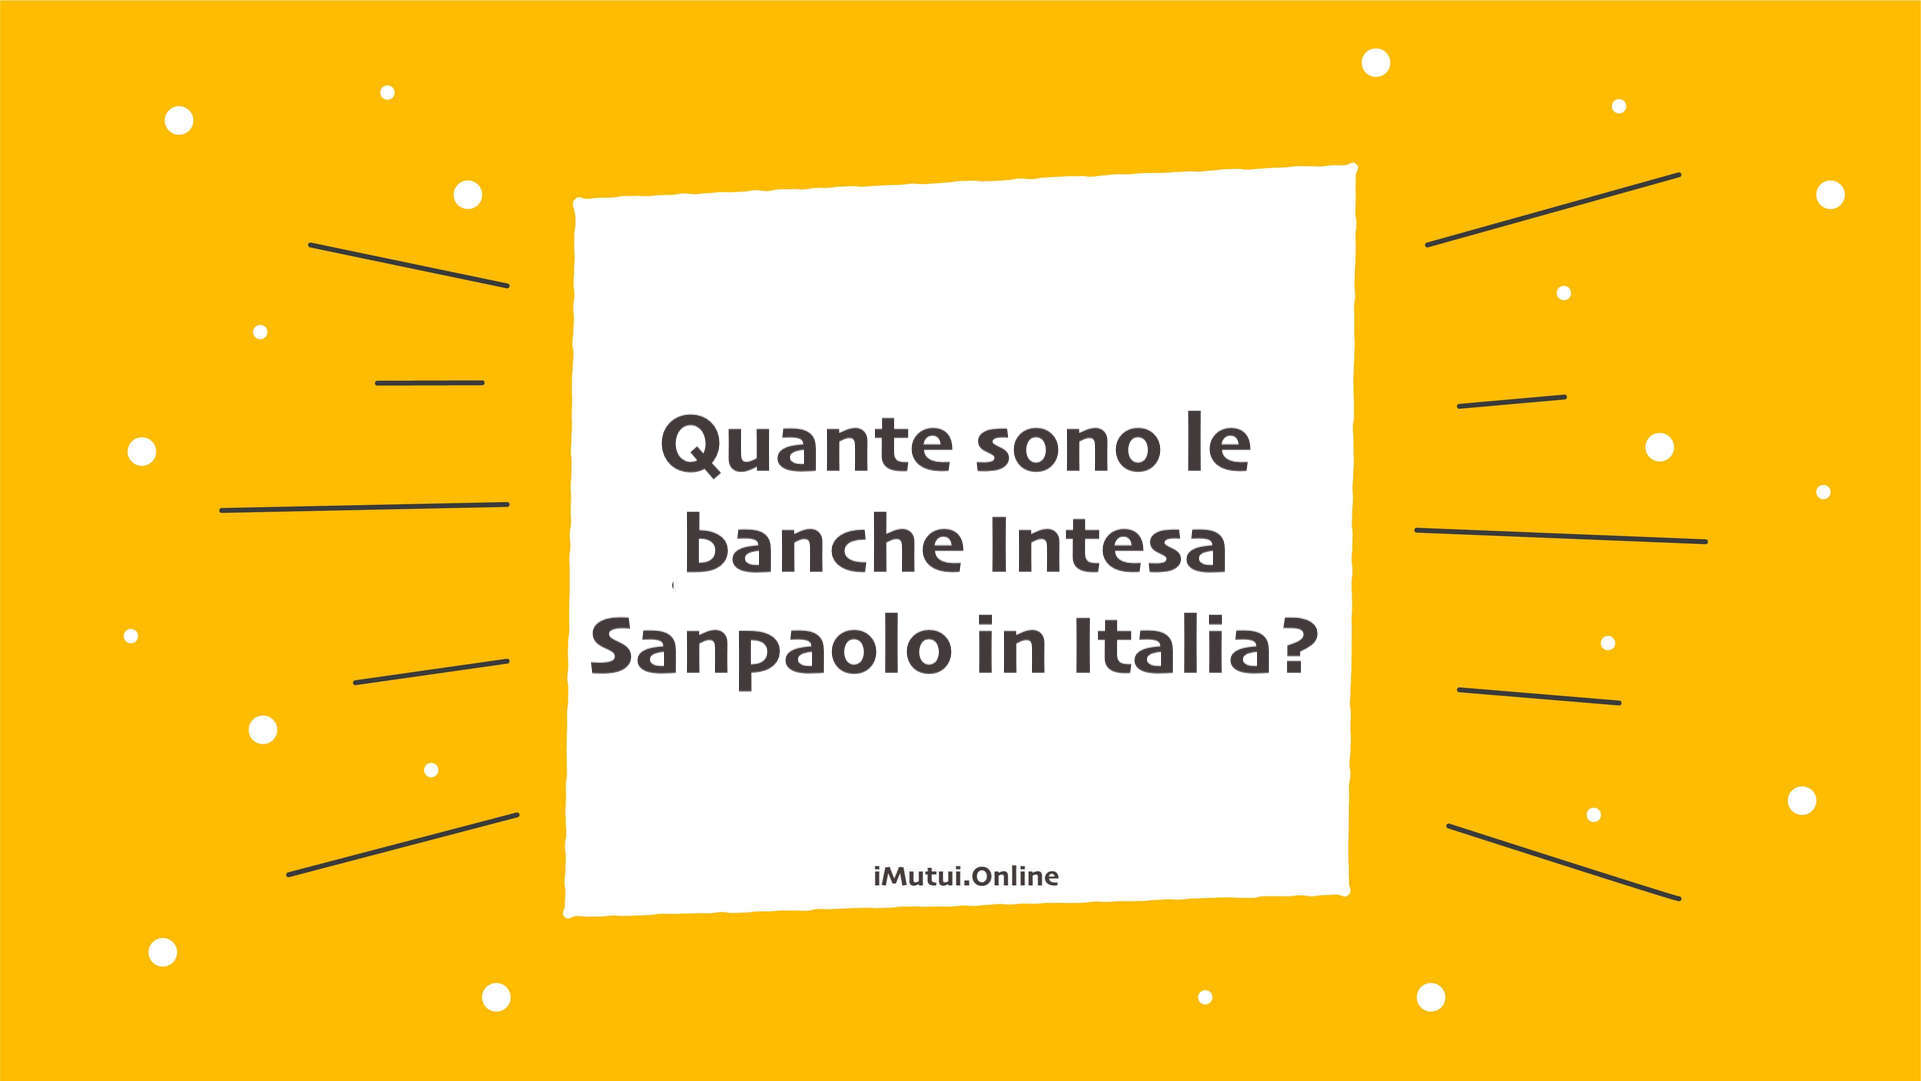 Quante sono le banche Intesa Sanpaolo in Italia